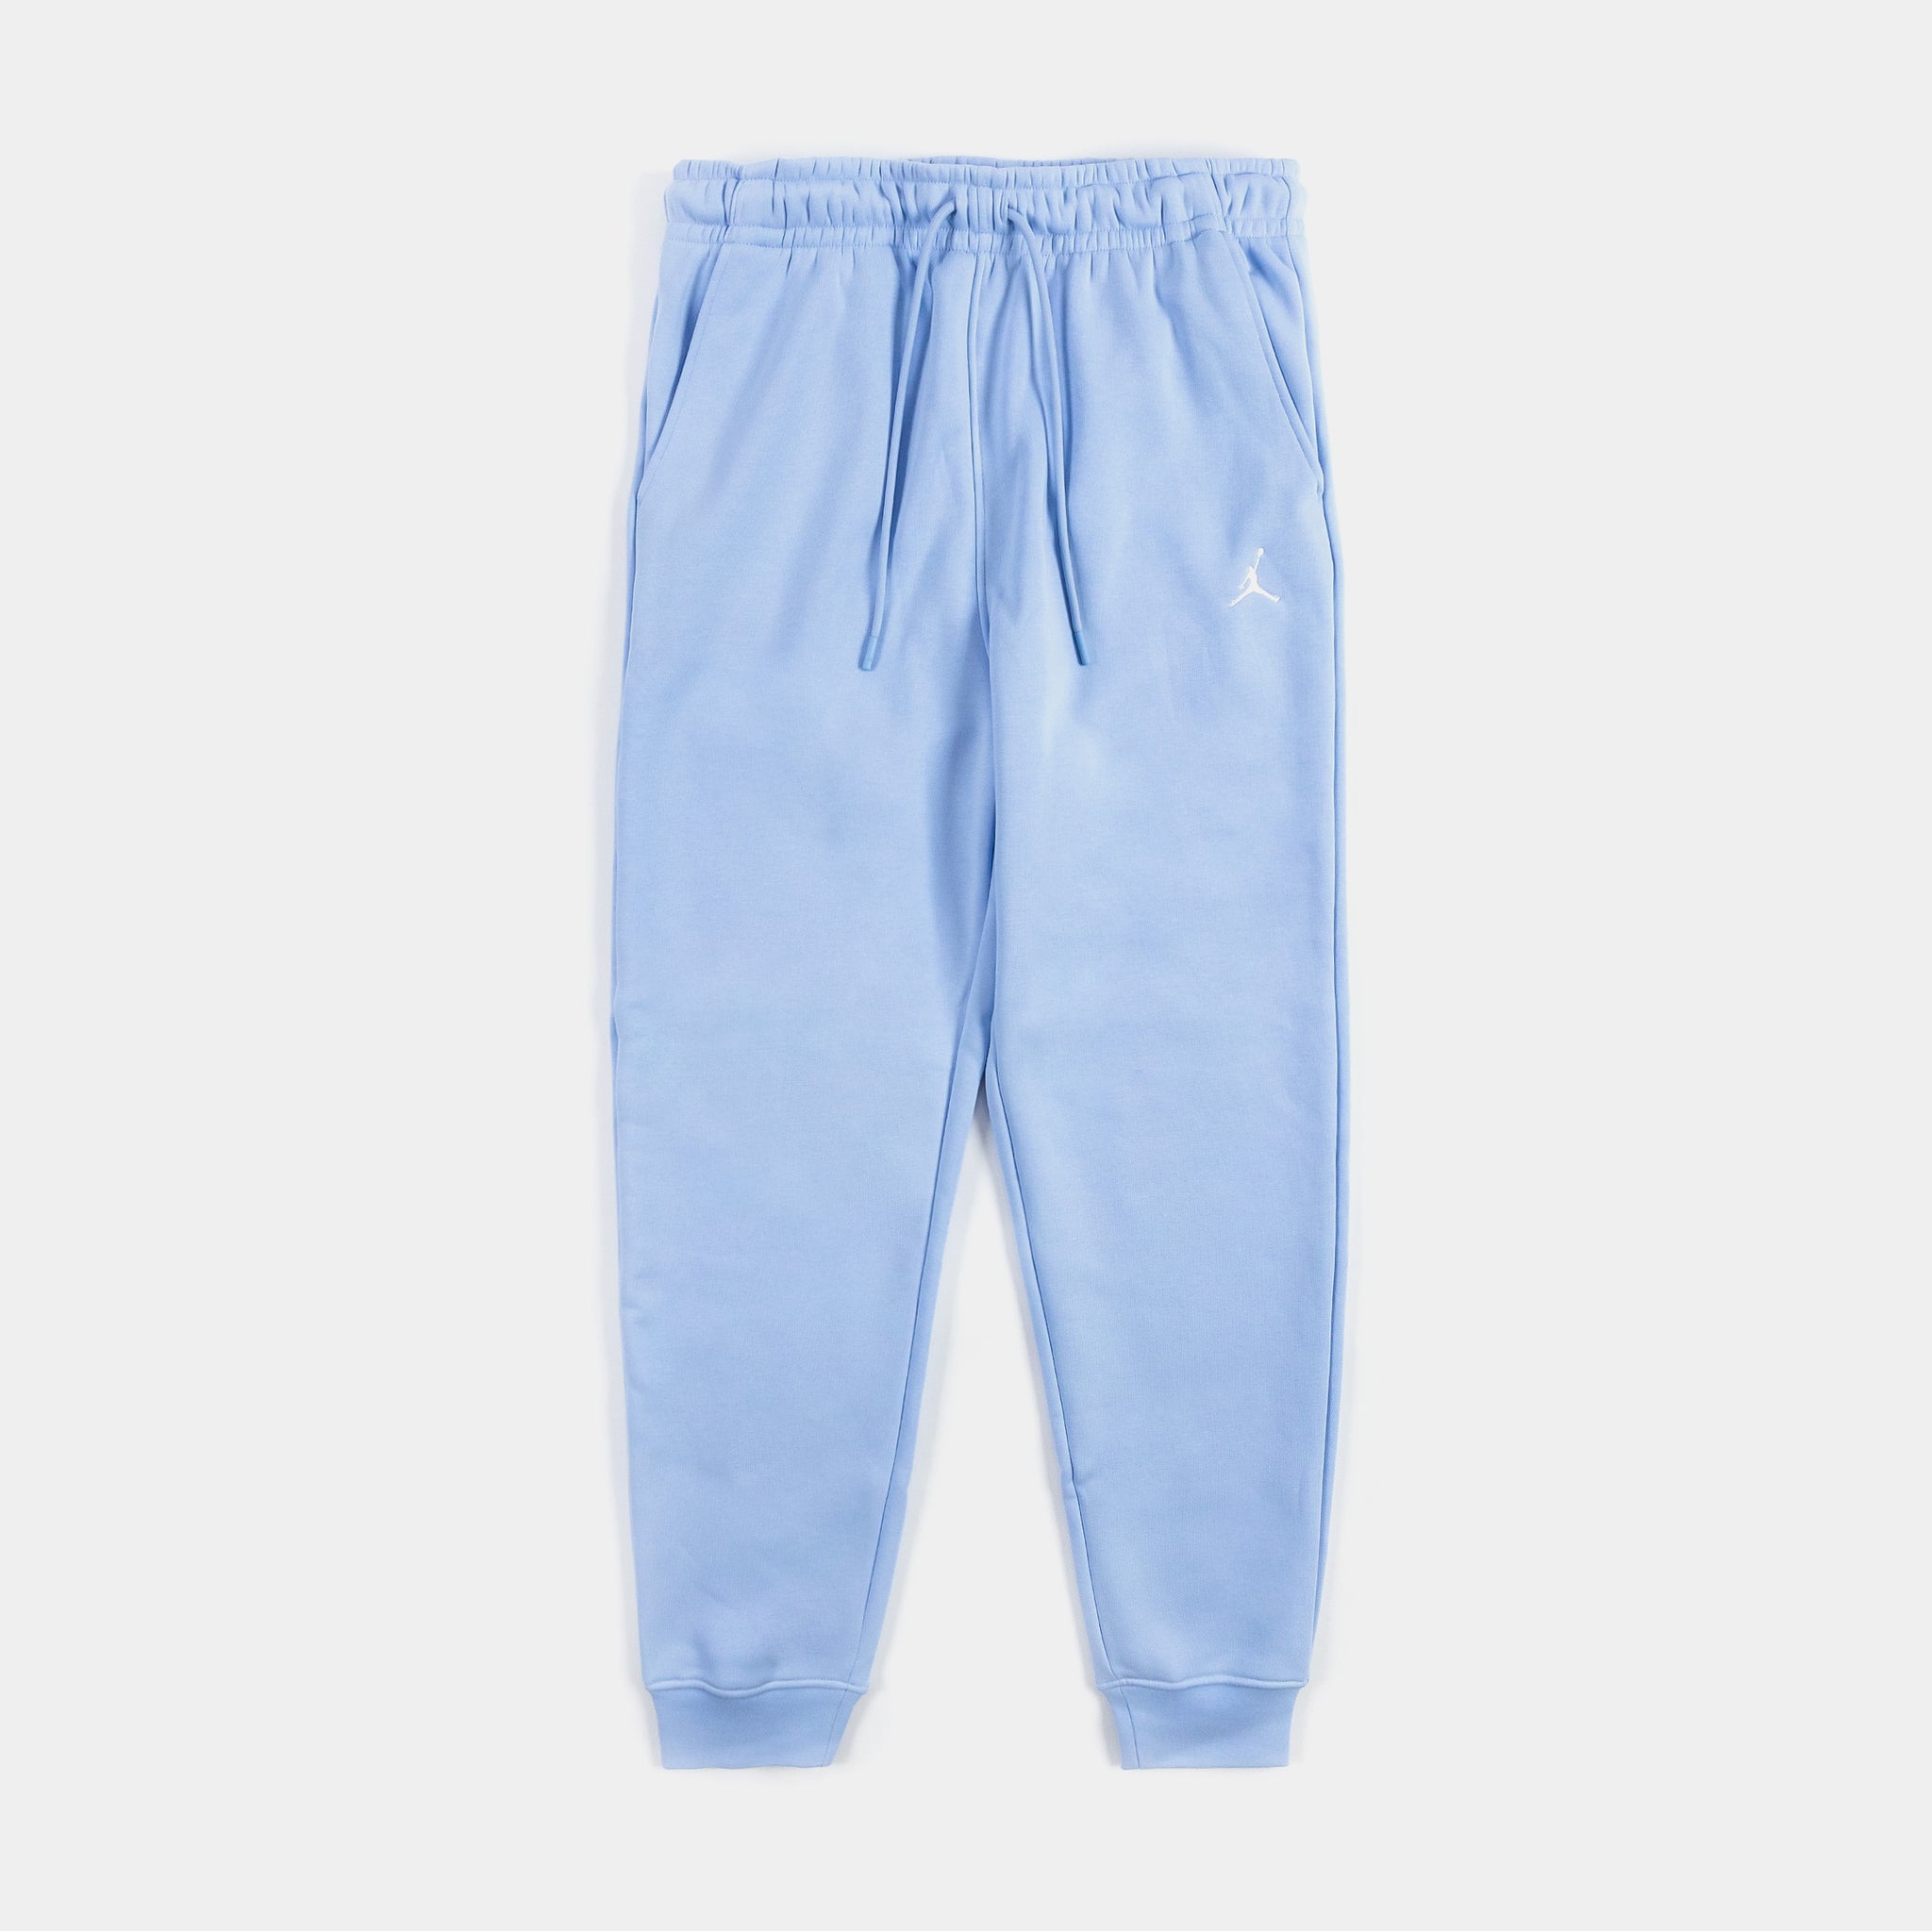 Shoe Mens Palace Fleece Blue – Essentials FJ7779-425 Pants Jogger Jordan